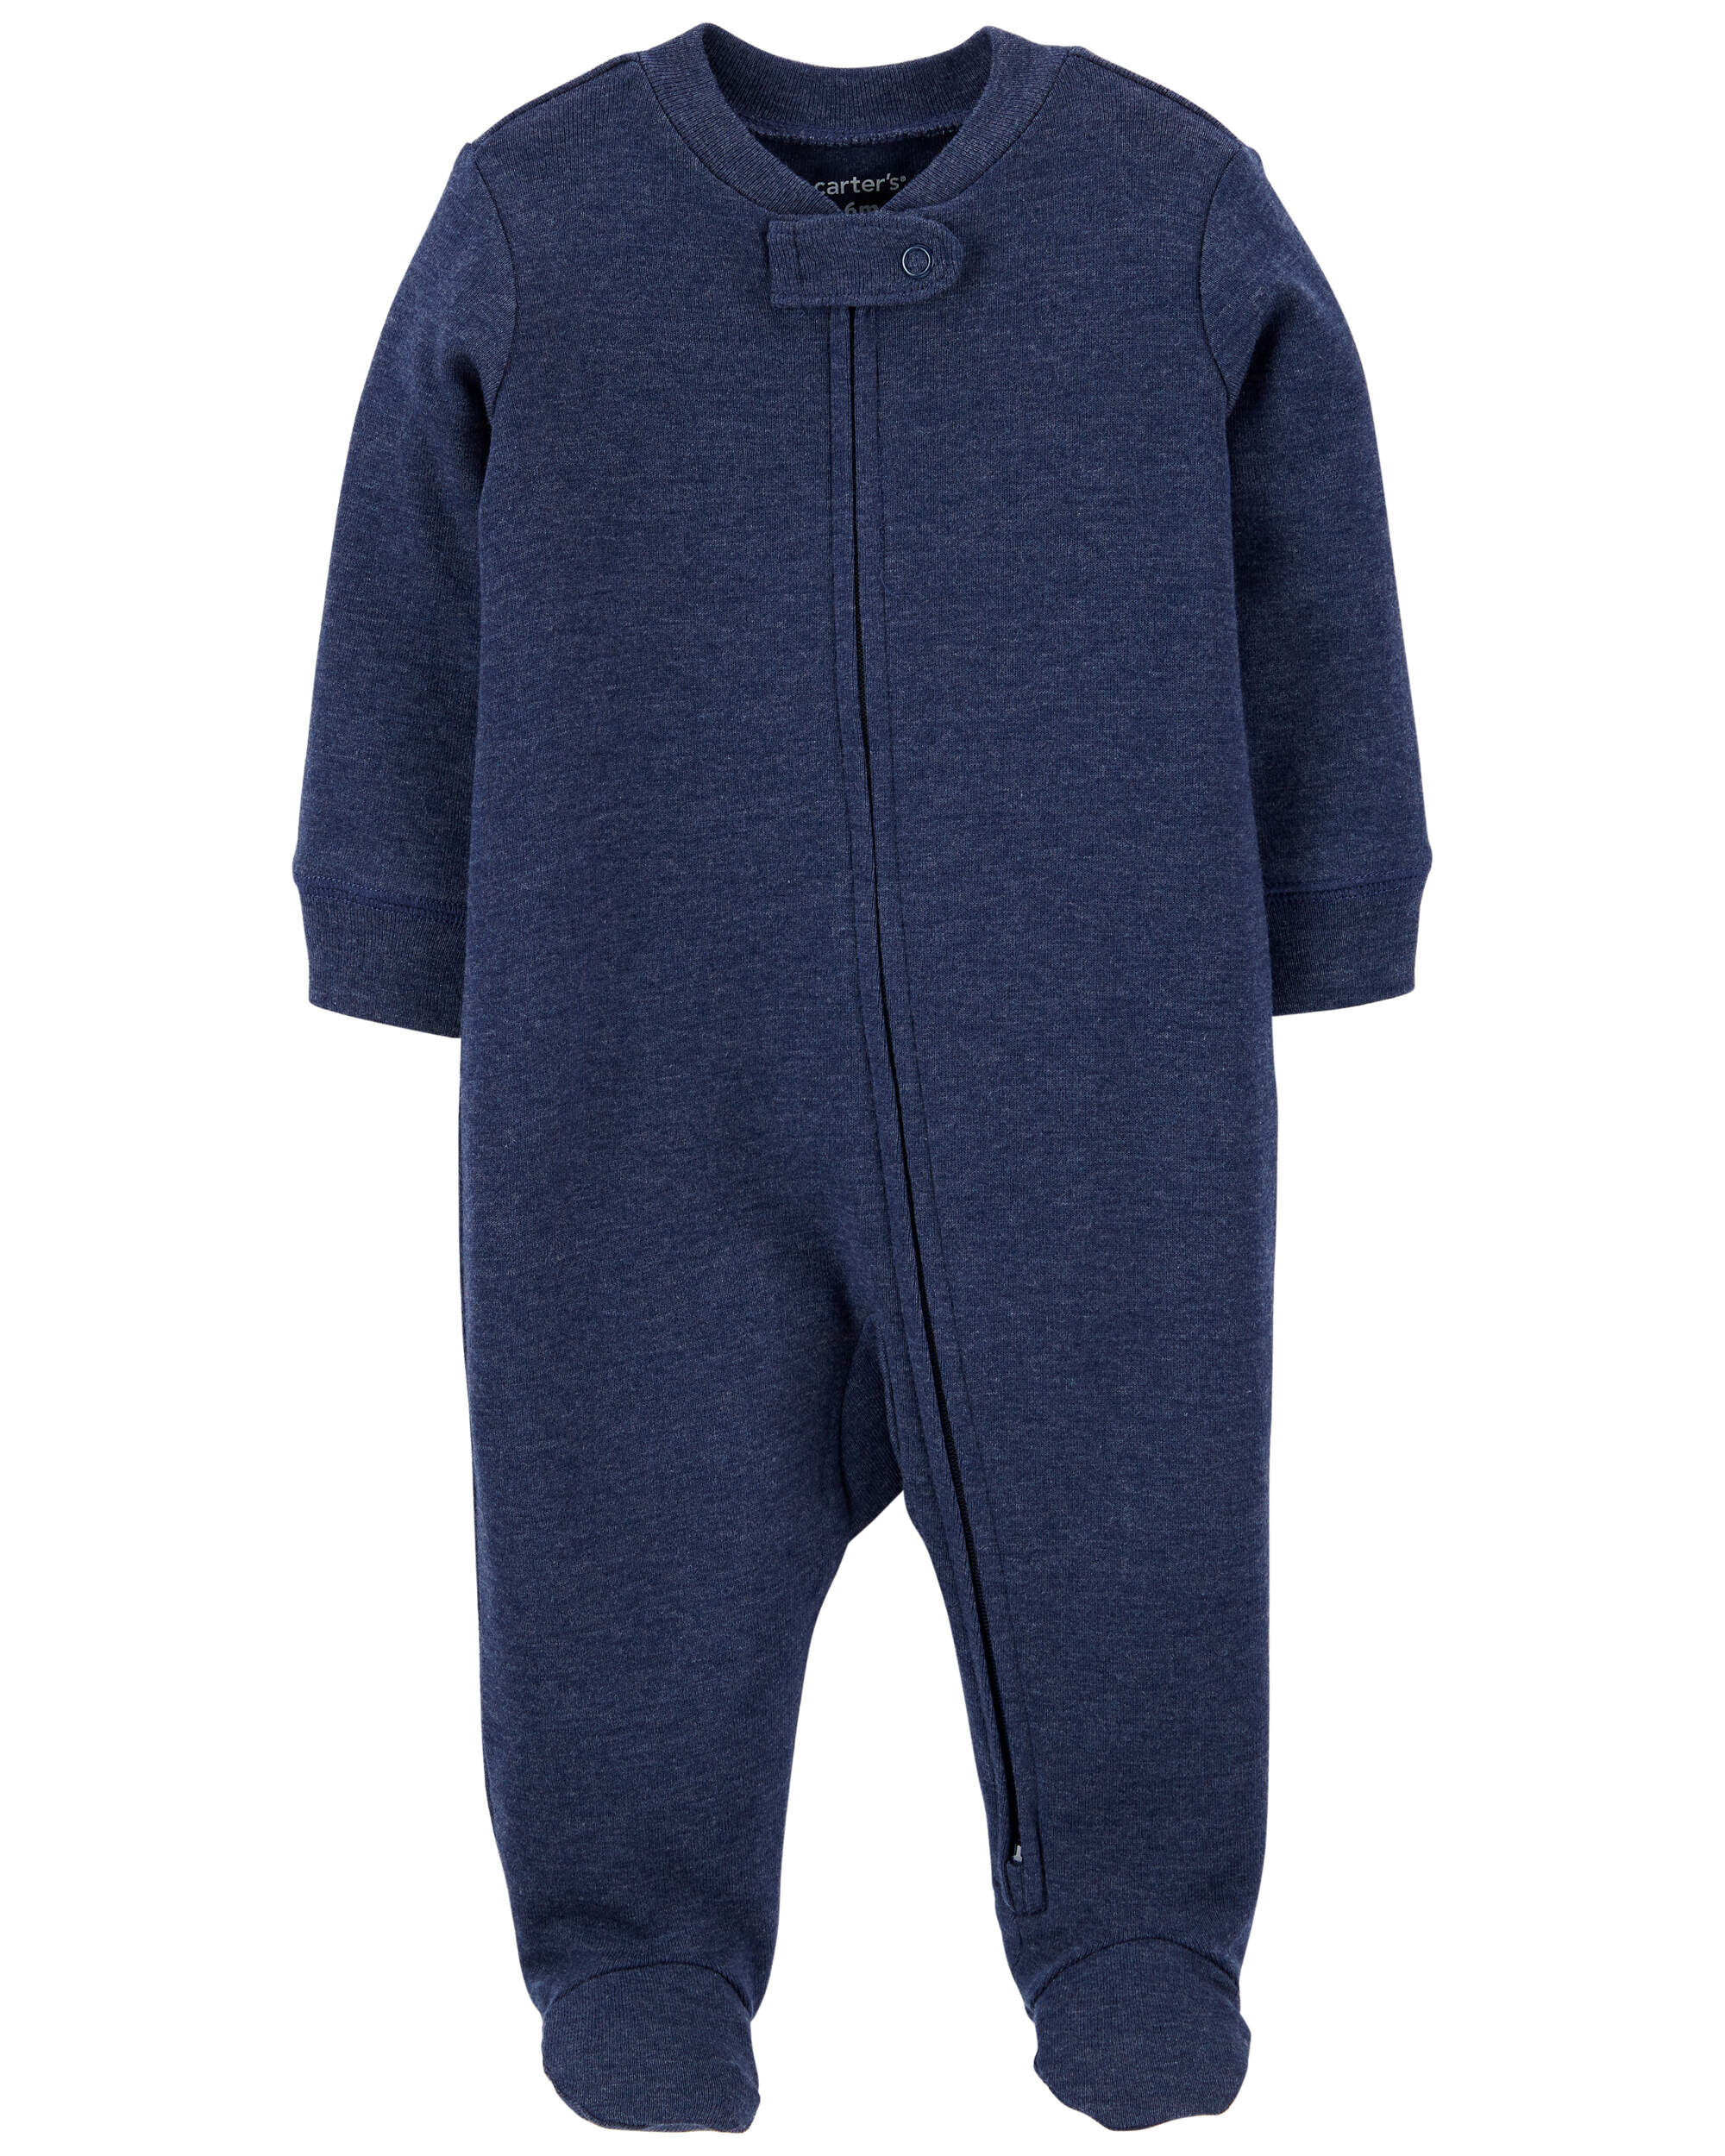 Цельная темно-синяя пижама для сна и игр для малышей Carter's